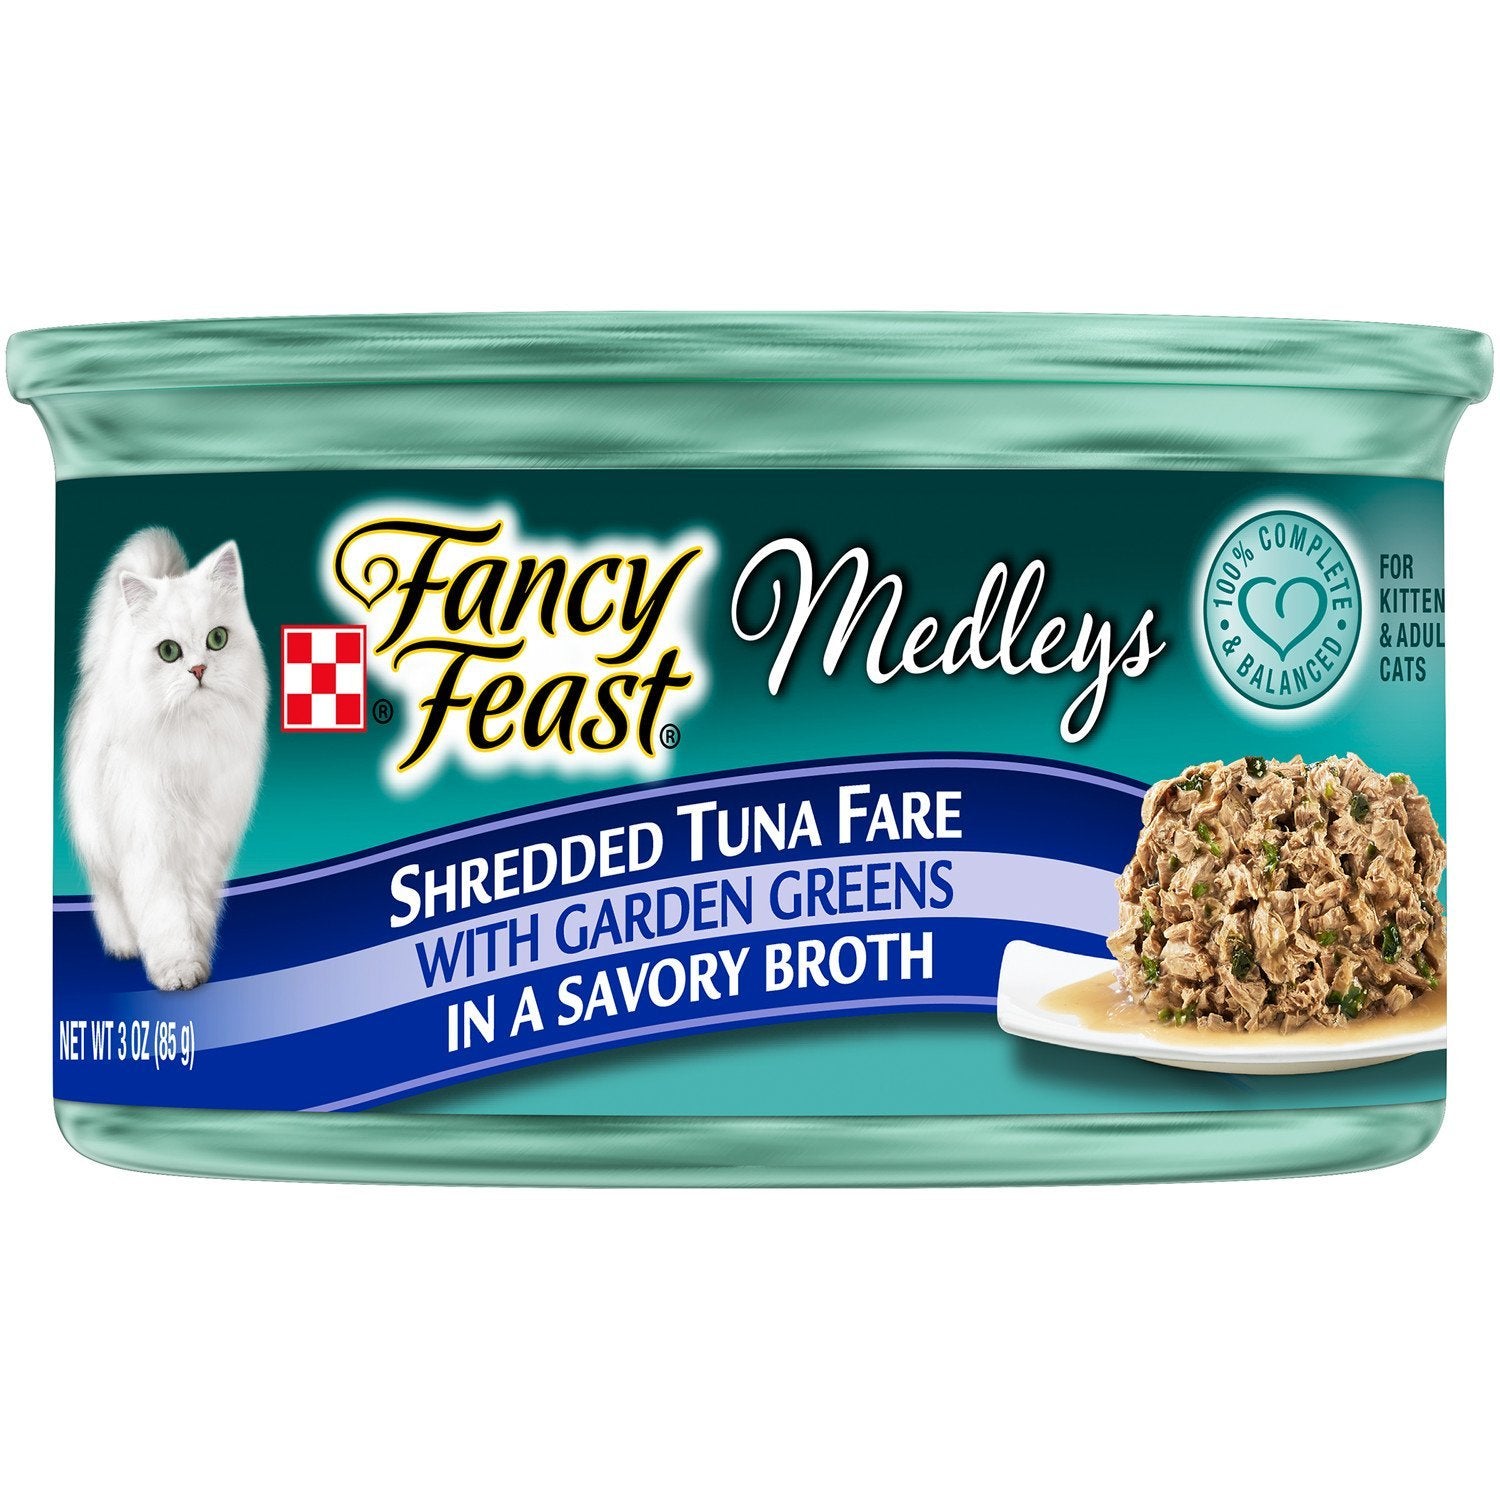 Fancy Feast Elegant Medleys Shredded Tuna Fare Wet Cat Food